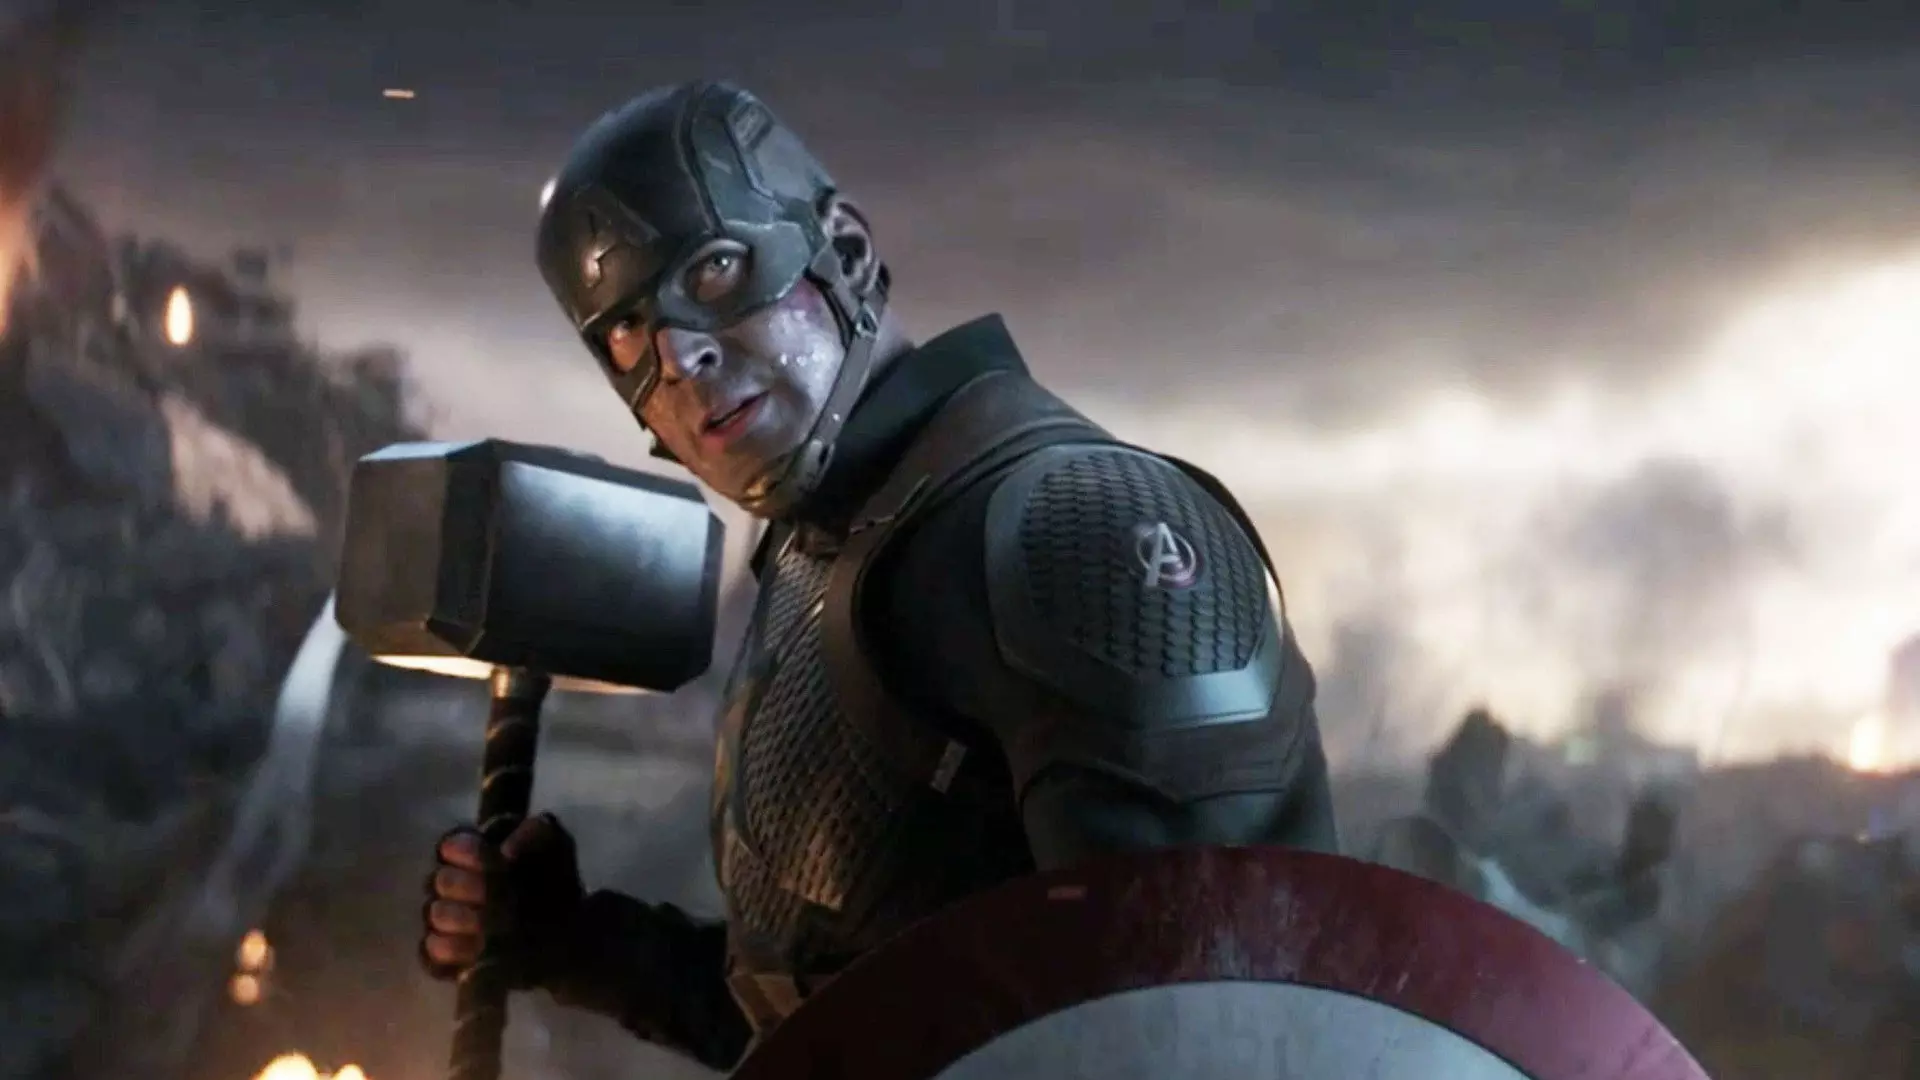 کریس ایوانز در نقش کاپیتان آمریکا در فیلم Avengers: Endgame که چکش میولنیر را در دستش دارد